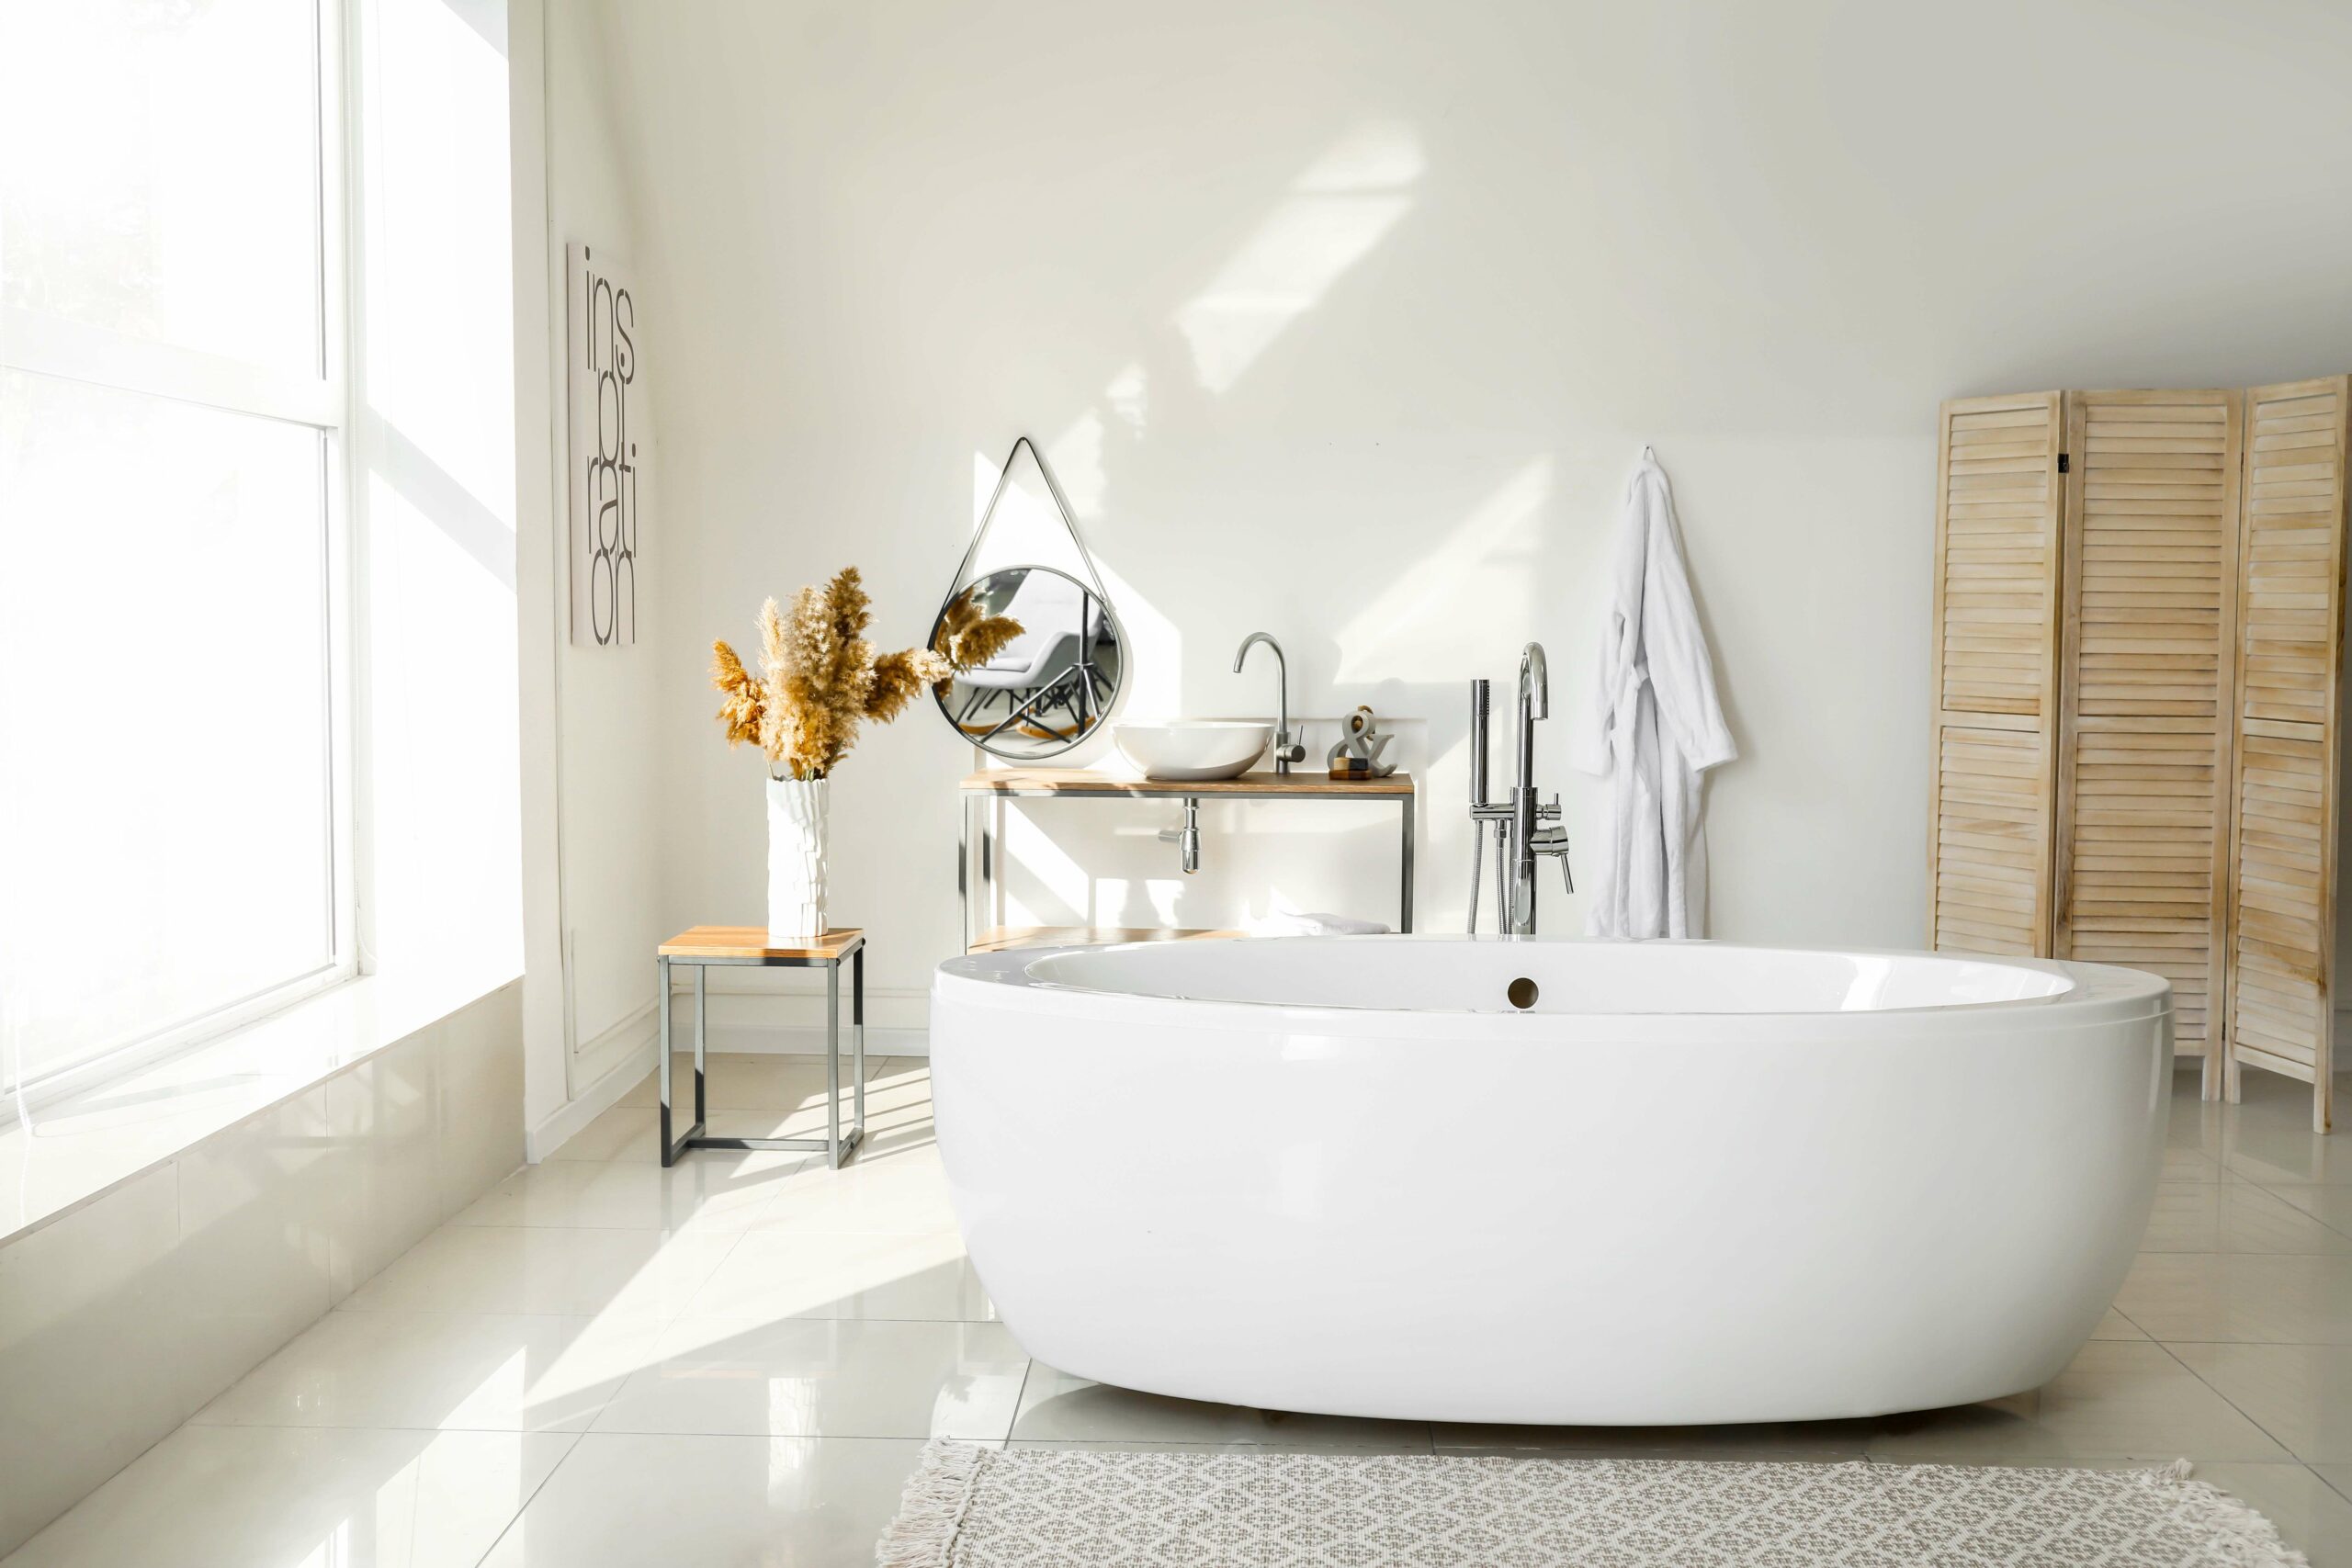 Achat robinet baignoire, douche : notre guide pour le choisir - Côté Maison